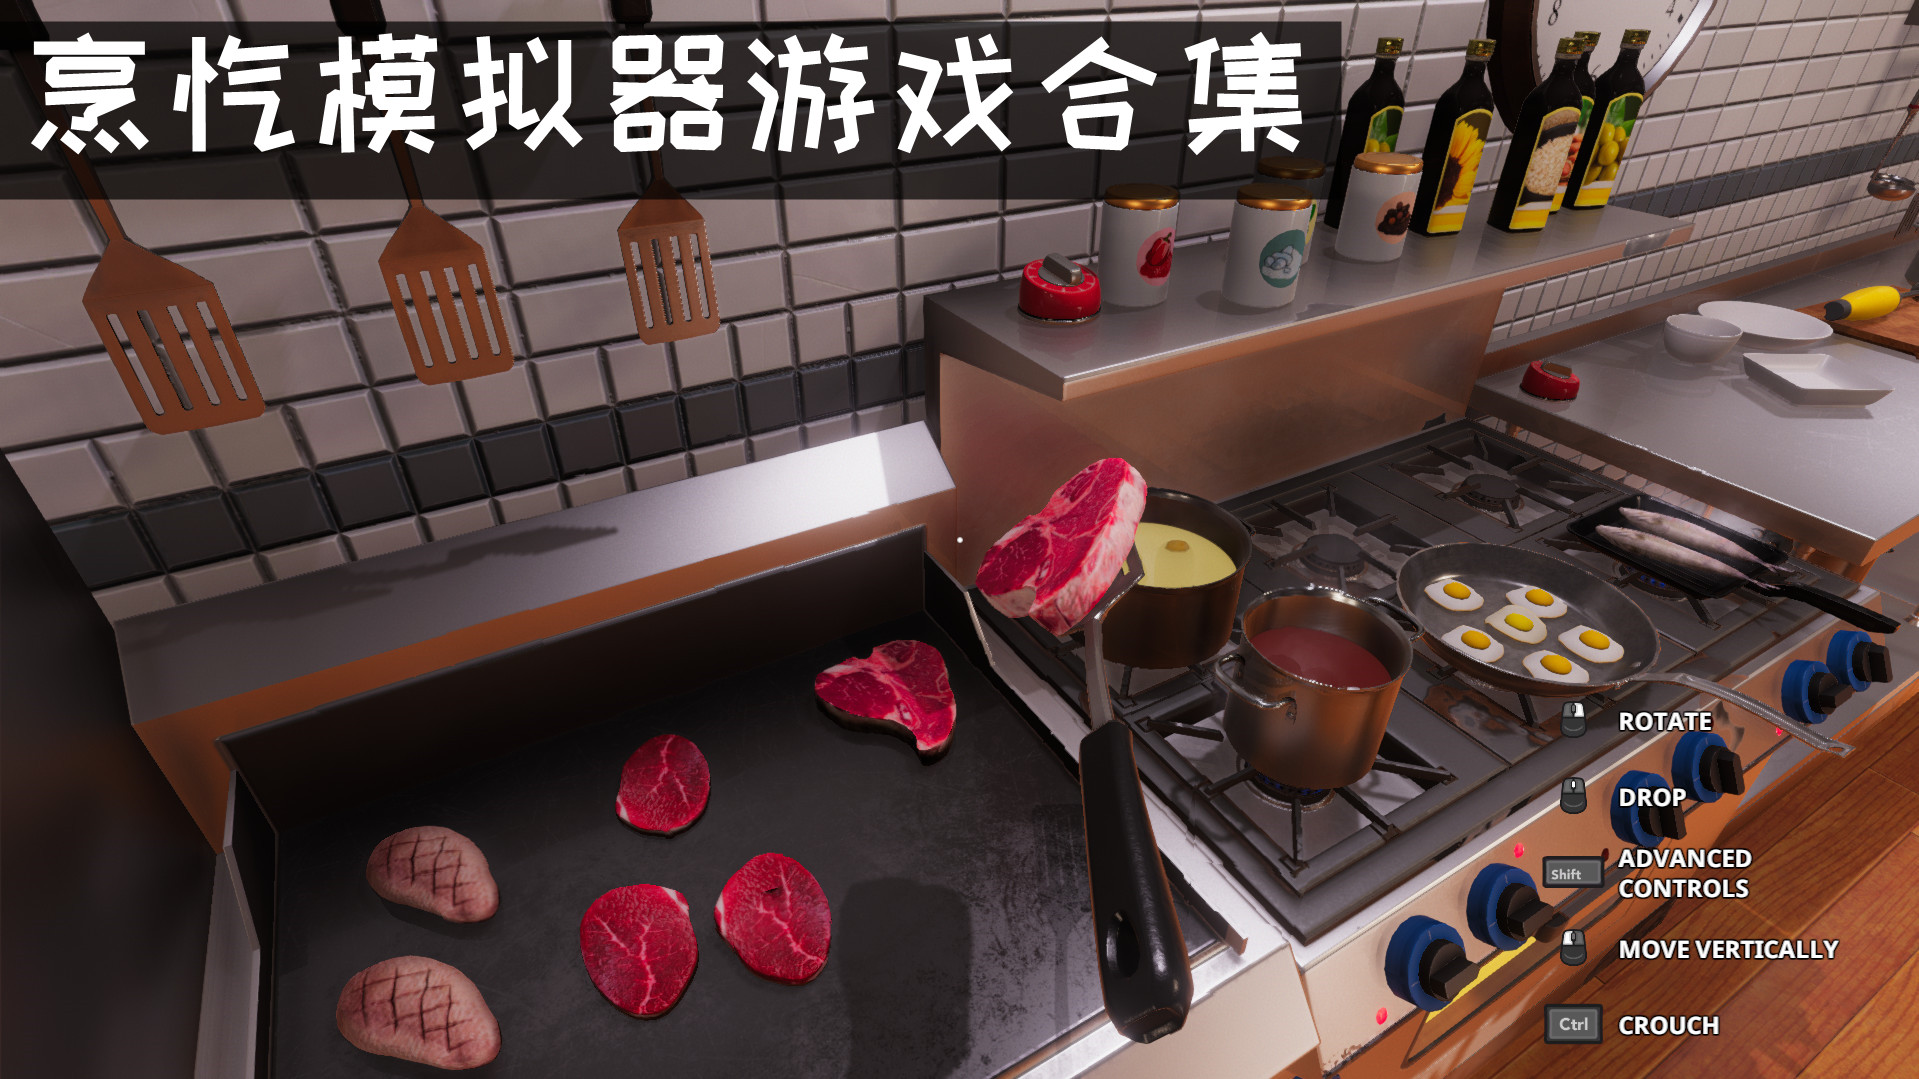 模拟烹饪料理的游戏 烹饪模拟器游戏有哪些